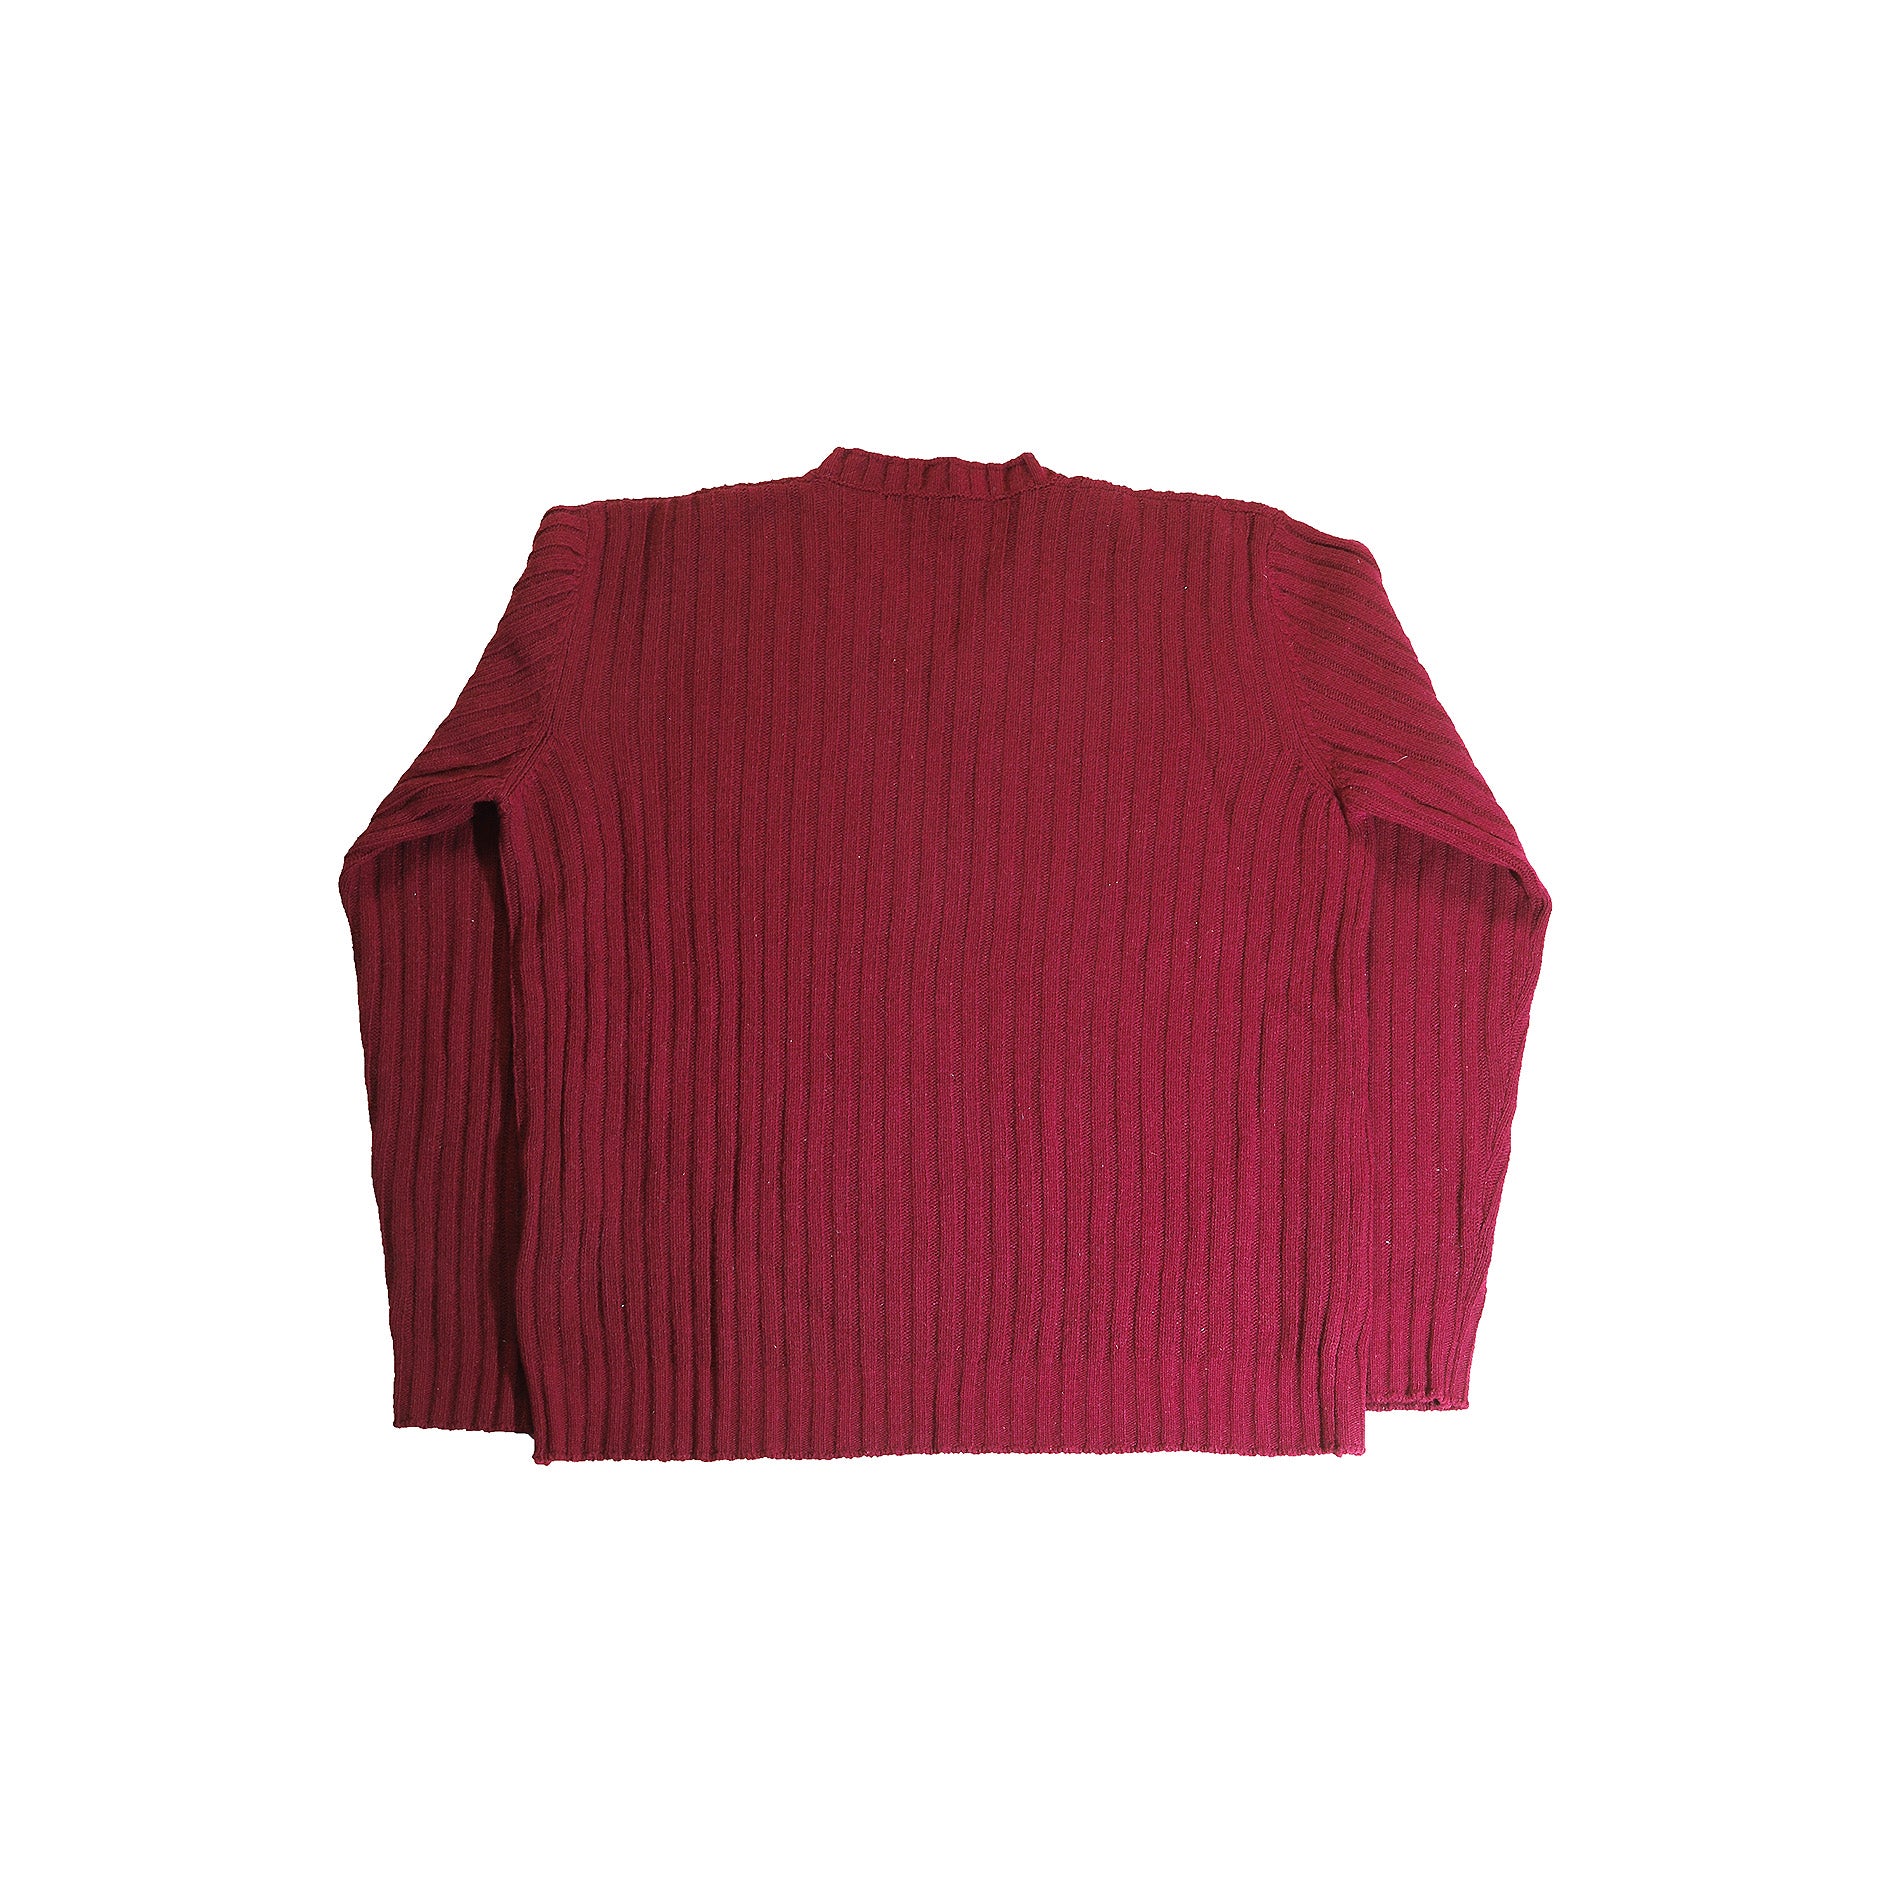 Helmut Lang FW97 Fuchsia Wool Knit Sweater